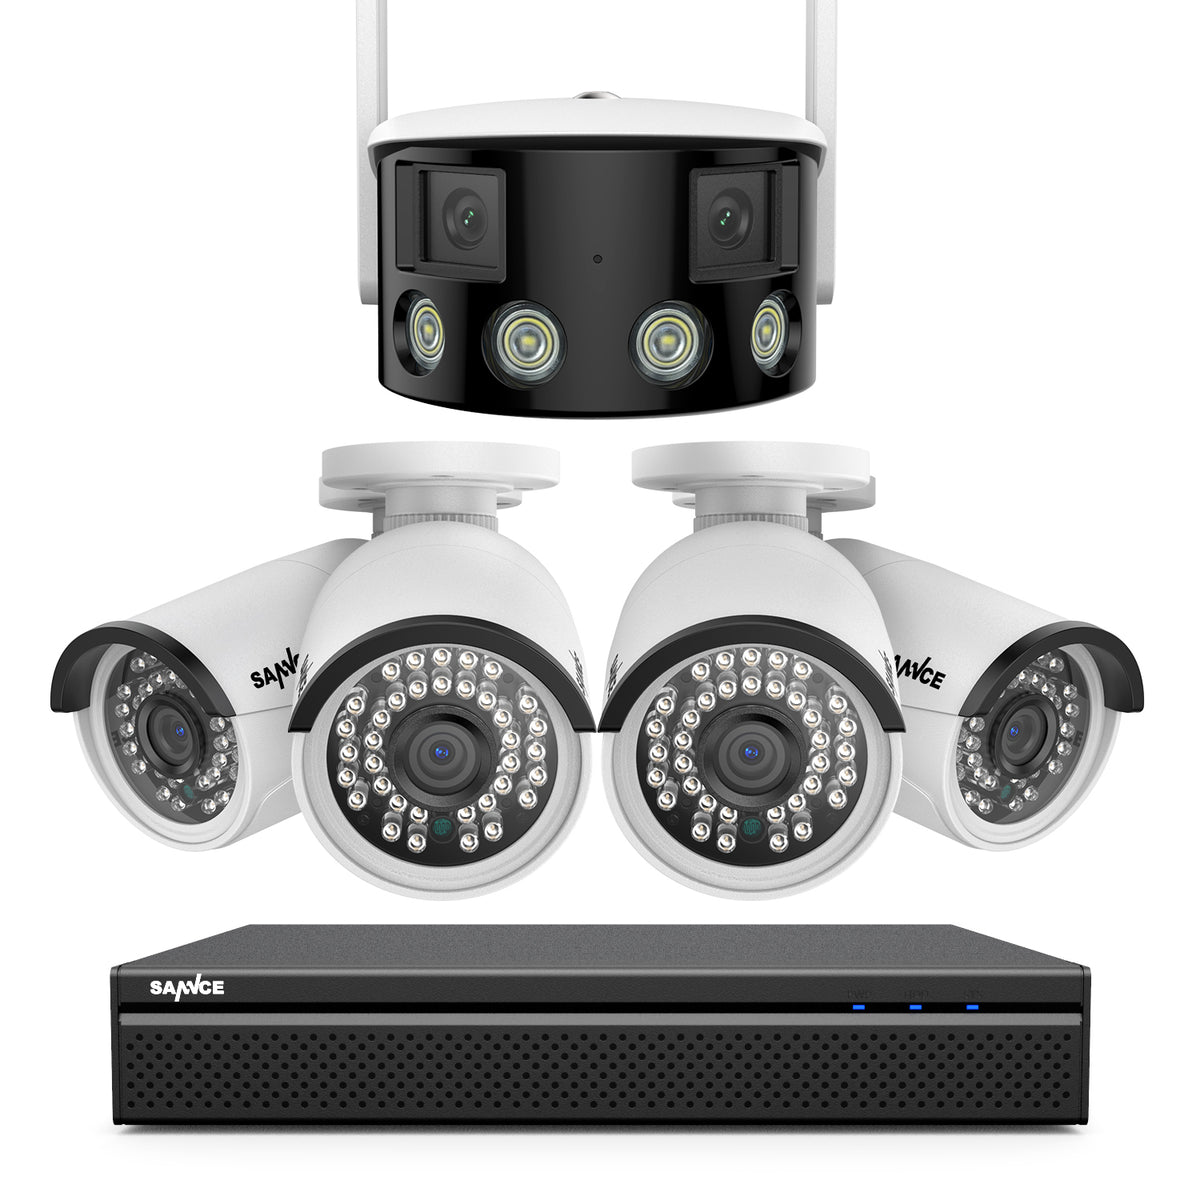 8 Canaux 5MP PoE Système de Caméra Sécurité  , 4 PoE Caméras , 1 Caméra IP WiFi Panoramique à Double Objectif, Vision Nocturne en Couleur, Audio Bidirectionnel, Compatible ONVIF